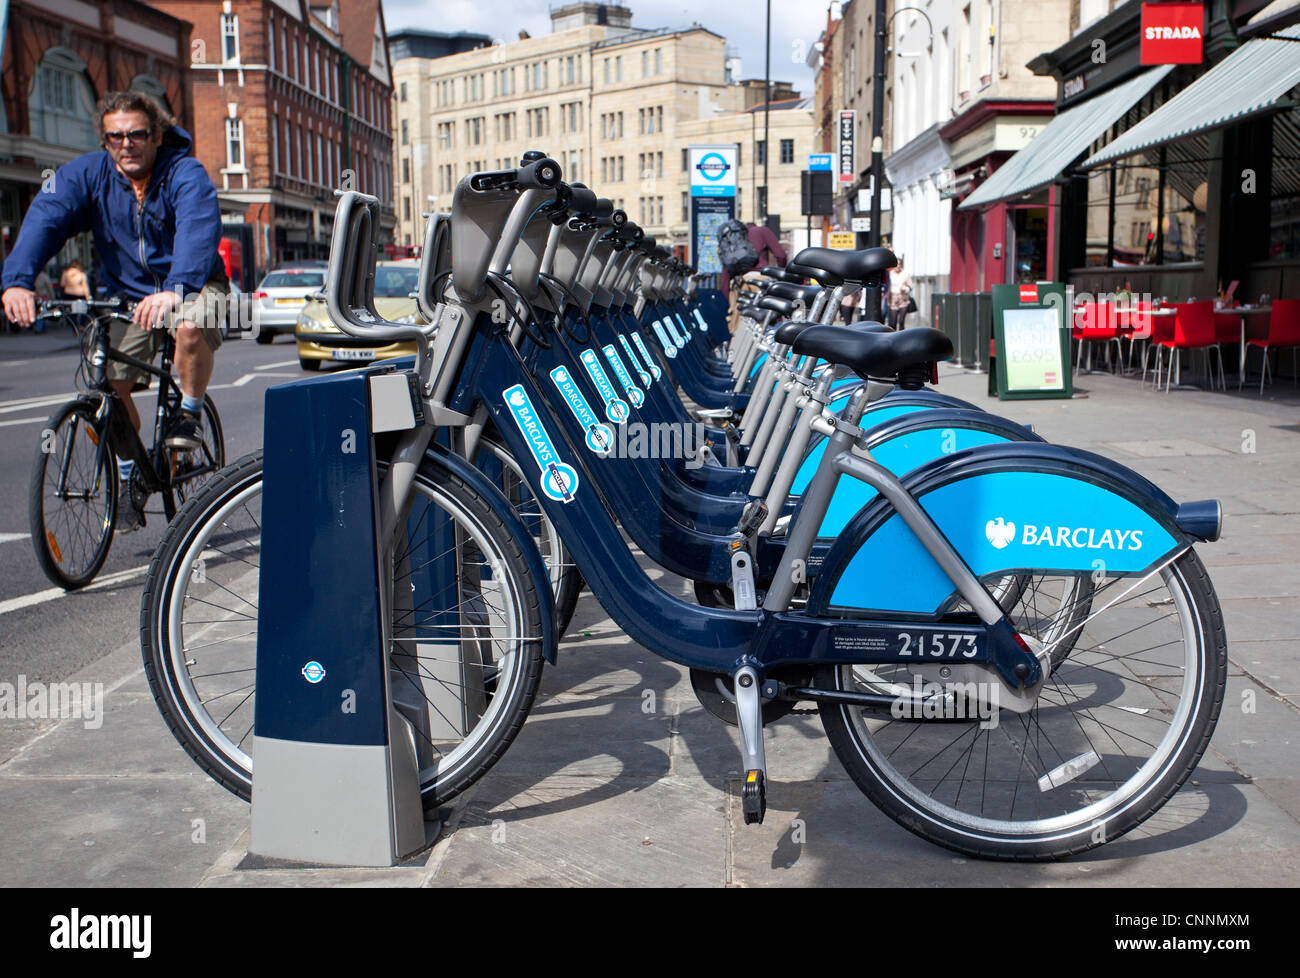 Una stazione di aggancio per biciclette come parte del nuovo schema di noleggio biciclette di Barclay, Commercial Street, Spitalfields, Inghilterra, Regno Unito. Foto Stock